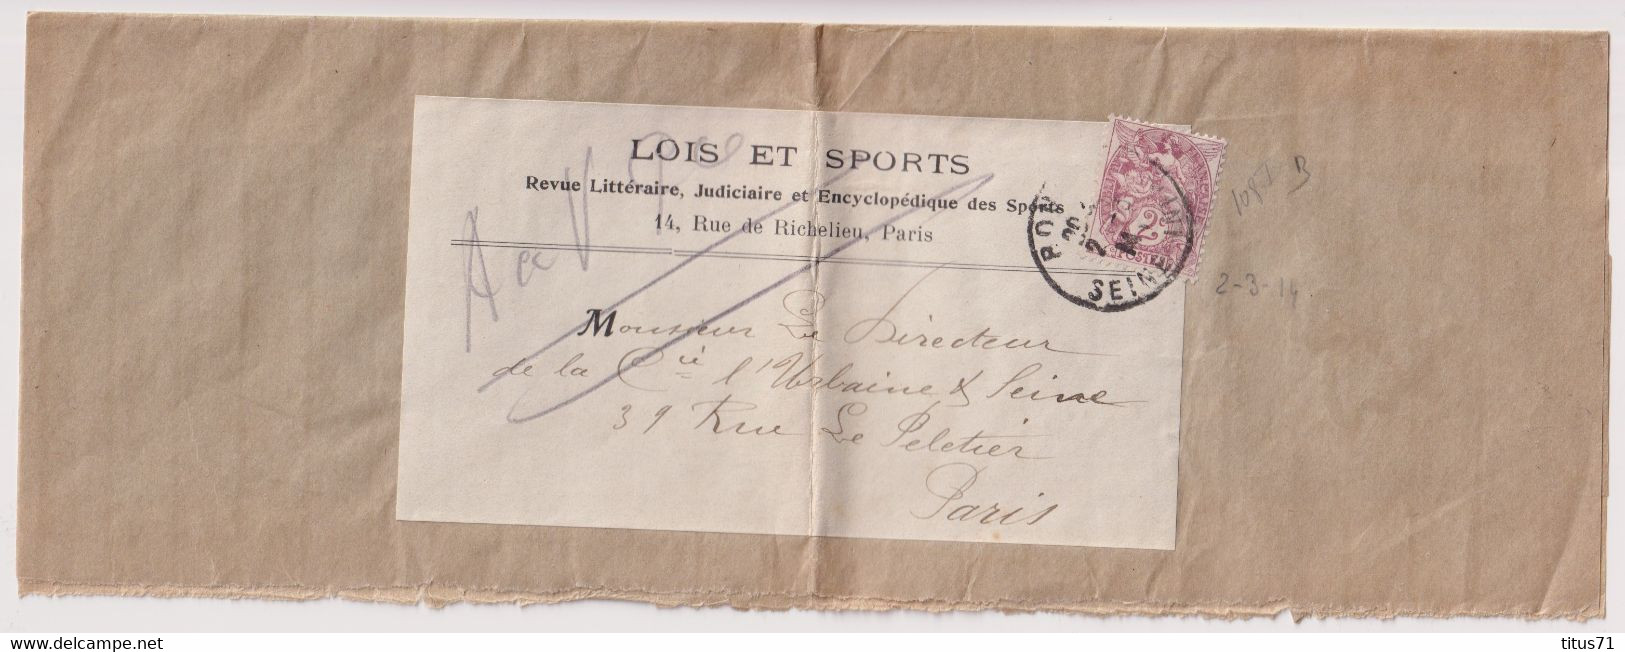 Bande De Journal Timbre 2 Centimes Sage - Journal Lois Et Sports - Circulée 1914 - Periódicos